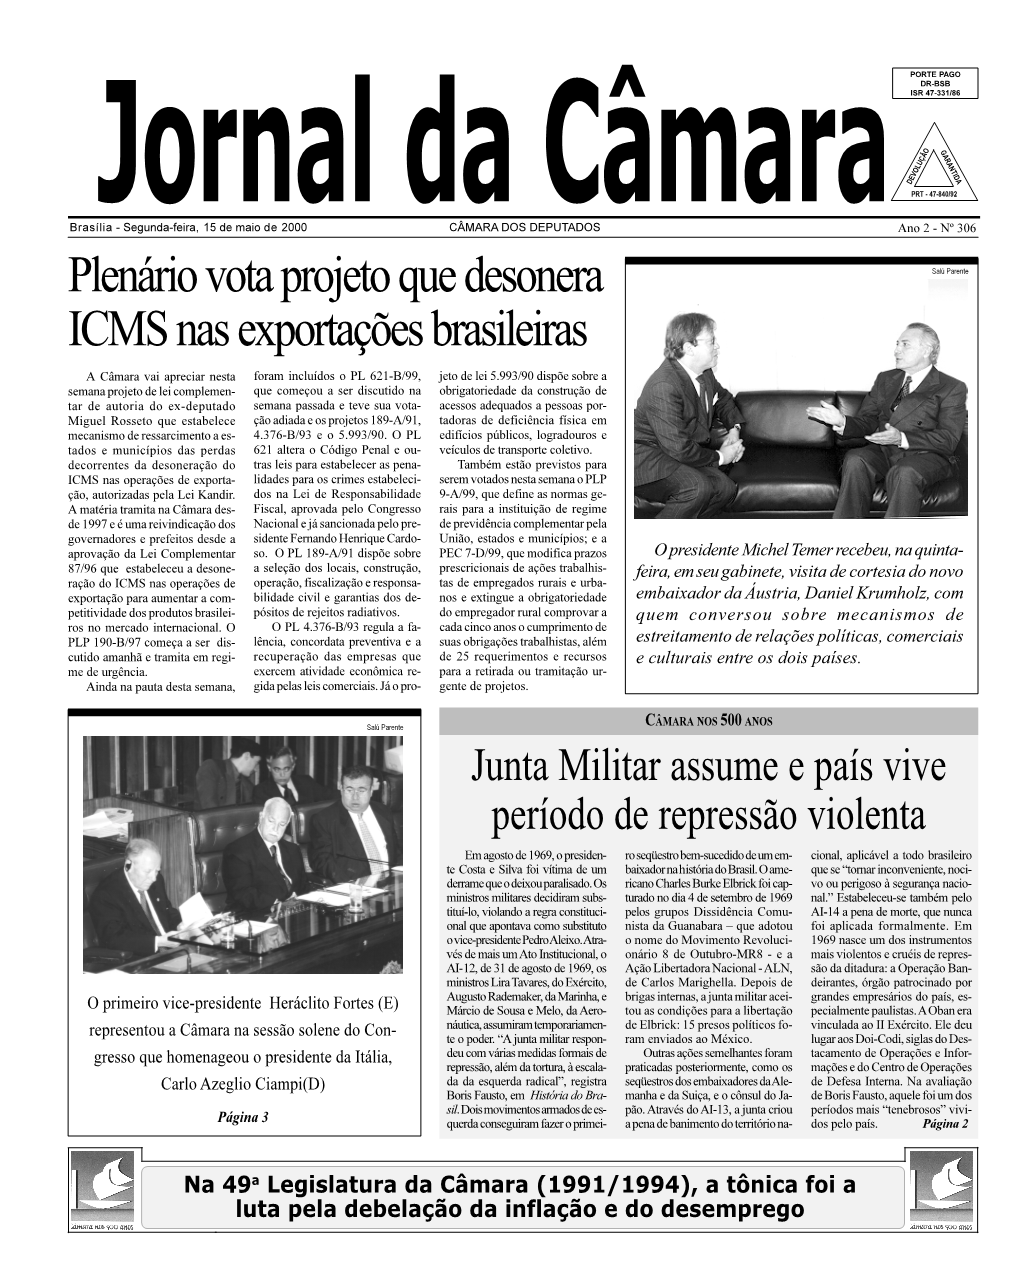 Plenário Vota Projeto Que Desonera ICMS Nas Exportações Brasileiras